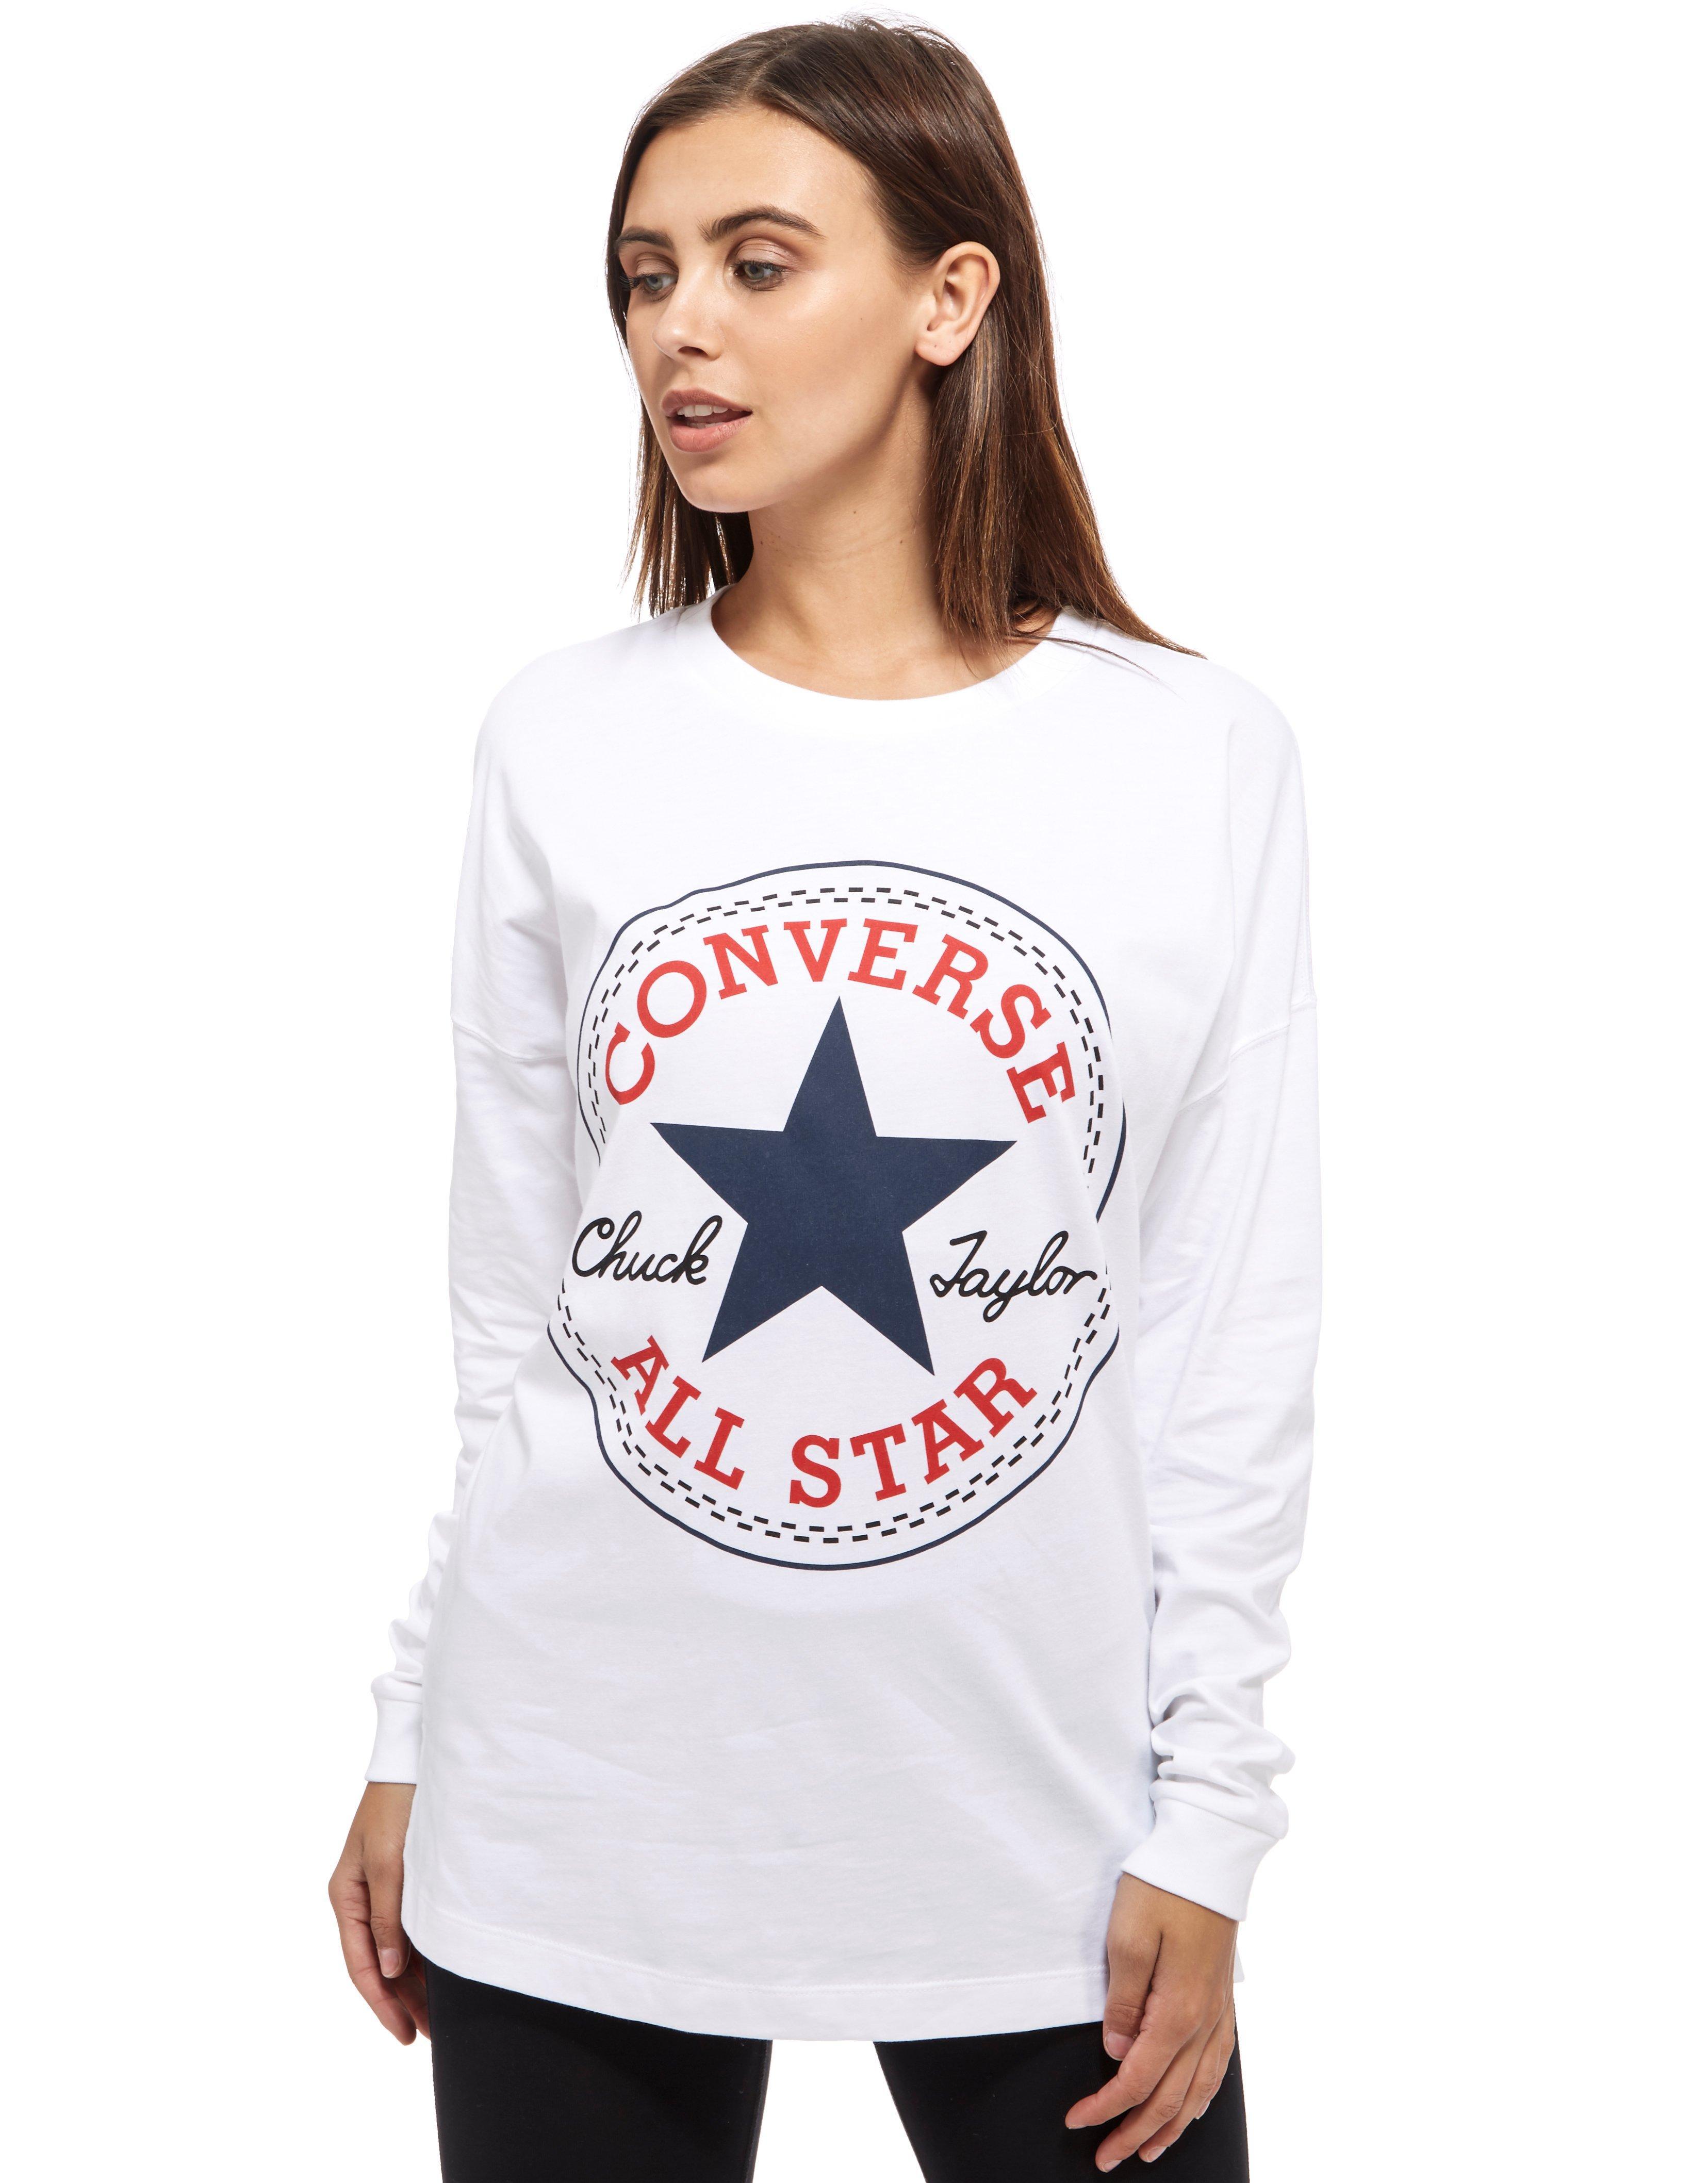 women's long sleeve converse top